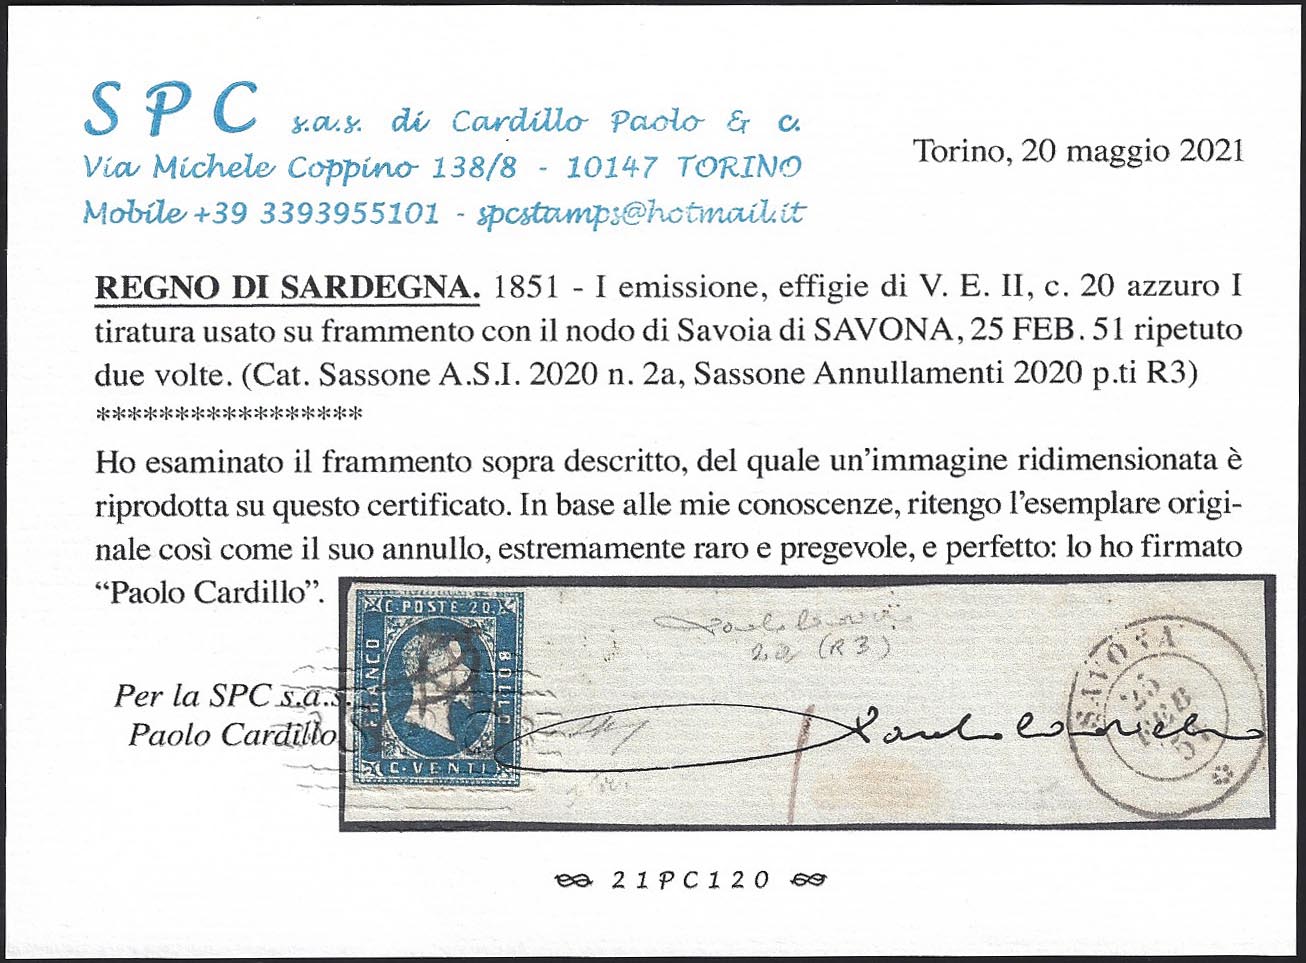 I emissione, c. 20 azzurro I tiratura (2a) usato su frammento con doppio nodo di Savoia di Savona